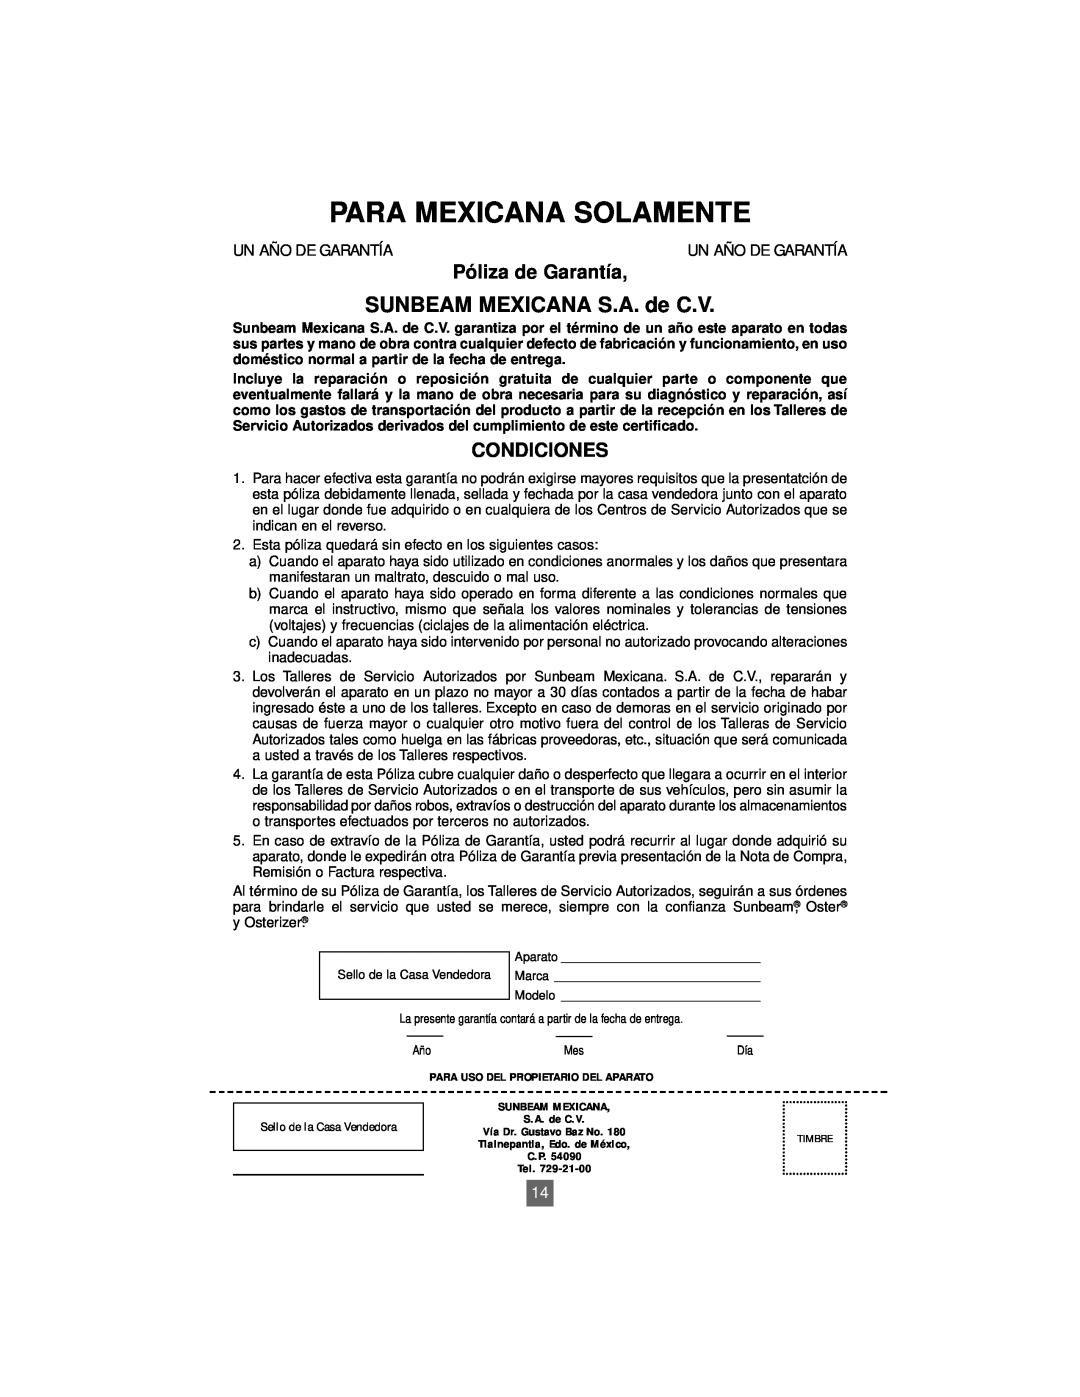 Oster 4718 instruction manual SUNBEAM MEXICANA S.A. de C.V, Para Mexicana Solamente, Póliza de Garantía, Condiciones 